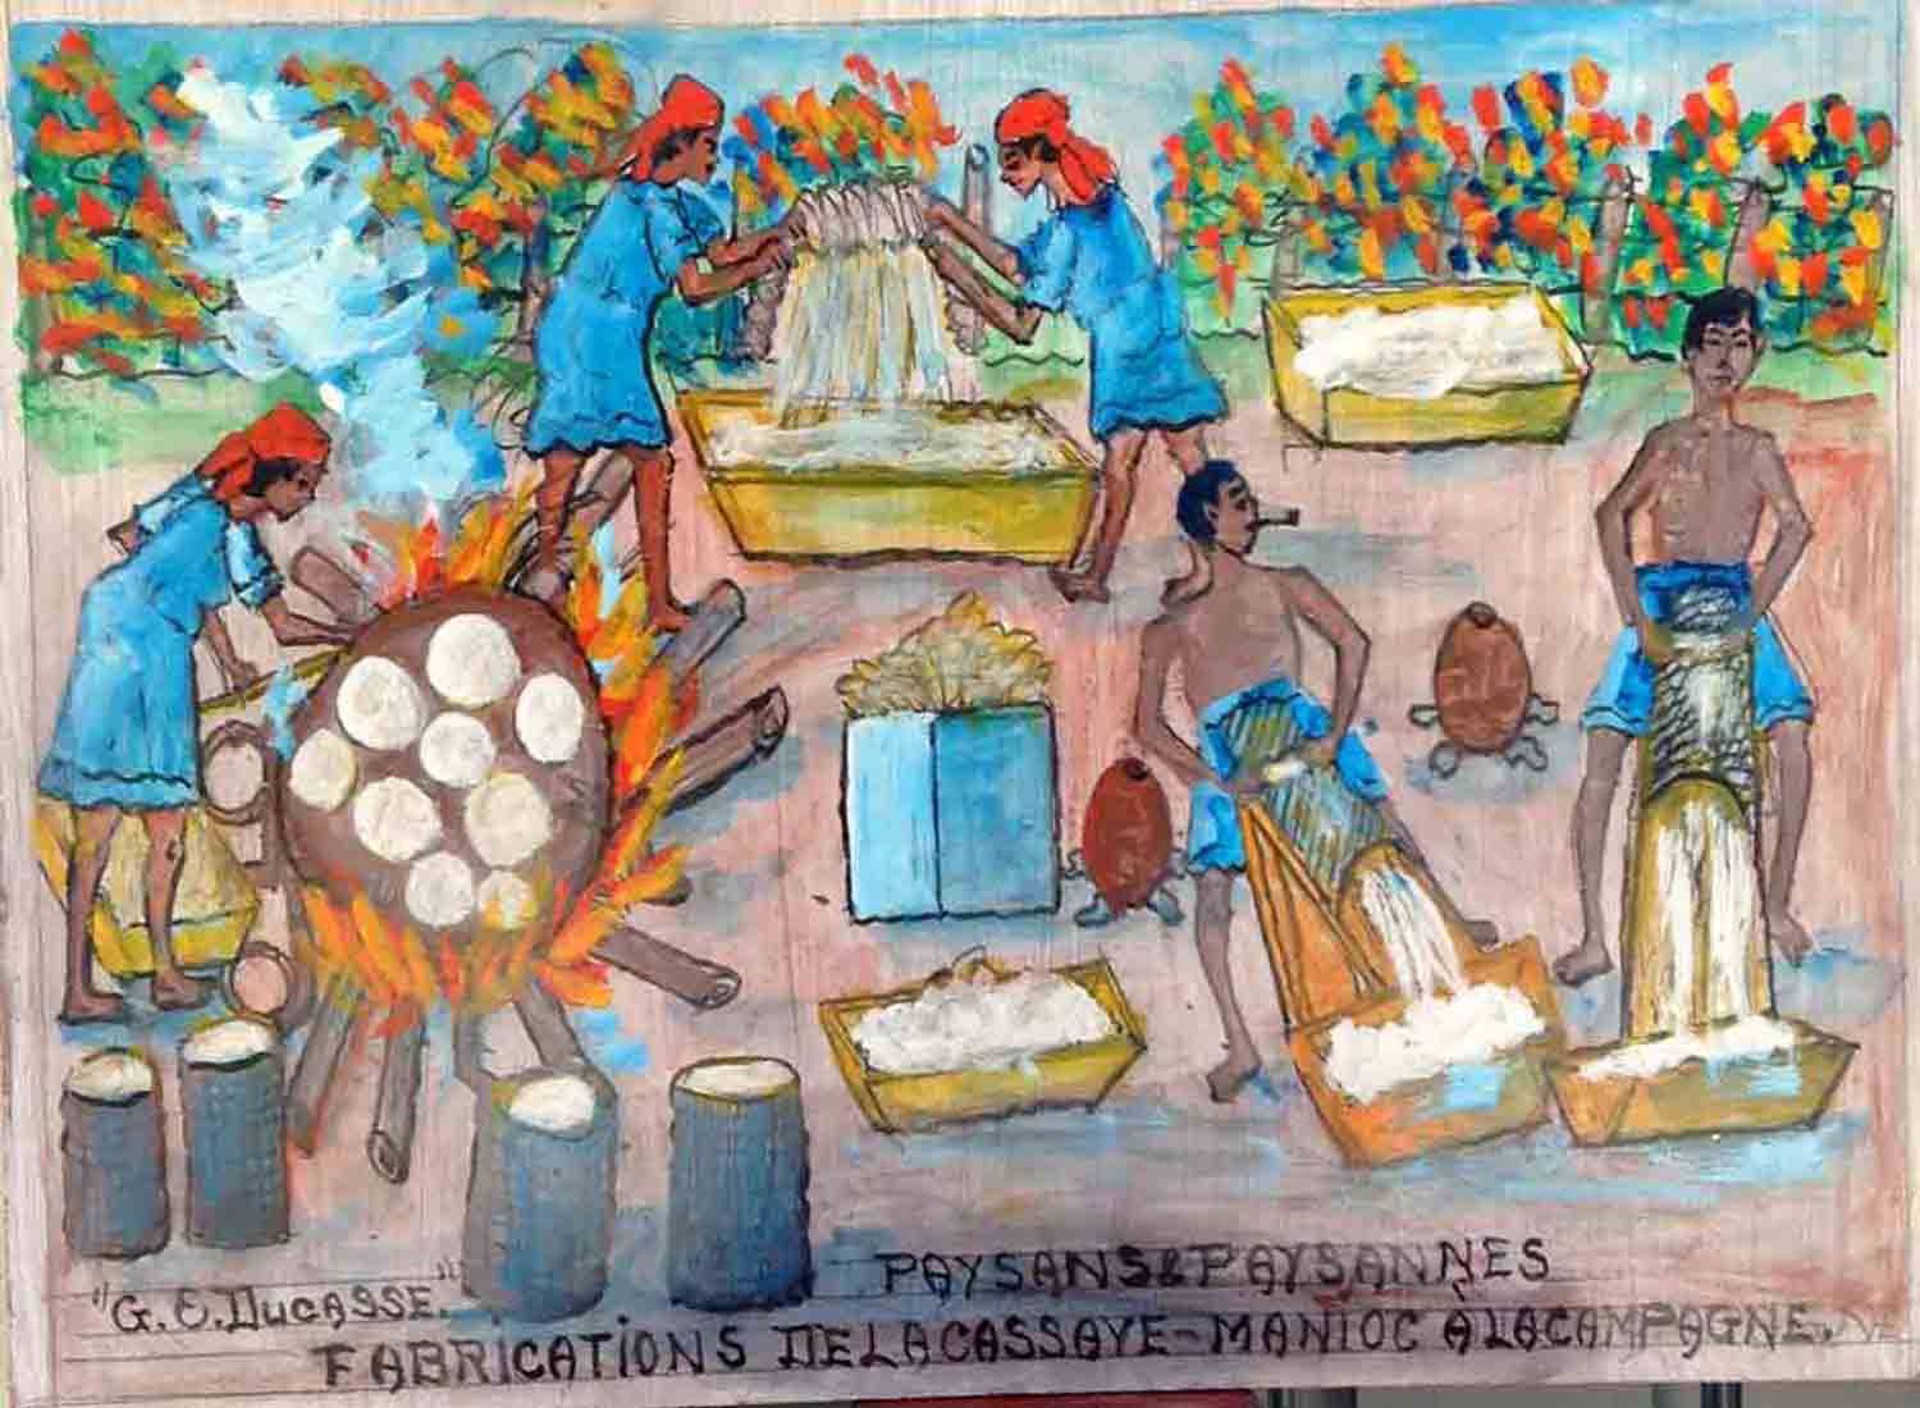 Paysans Paysannes Fabrication de La Cassave-Manioc A La Campagne #20MFN by Gervais Emmanuel Ducasse (Haitian, 1903-1988)